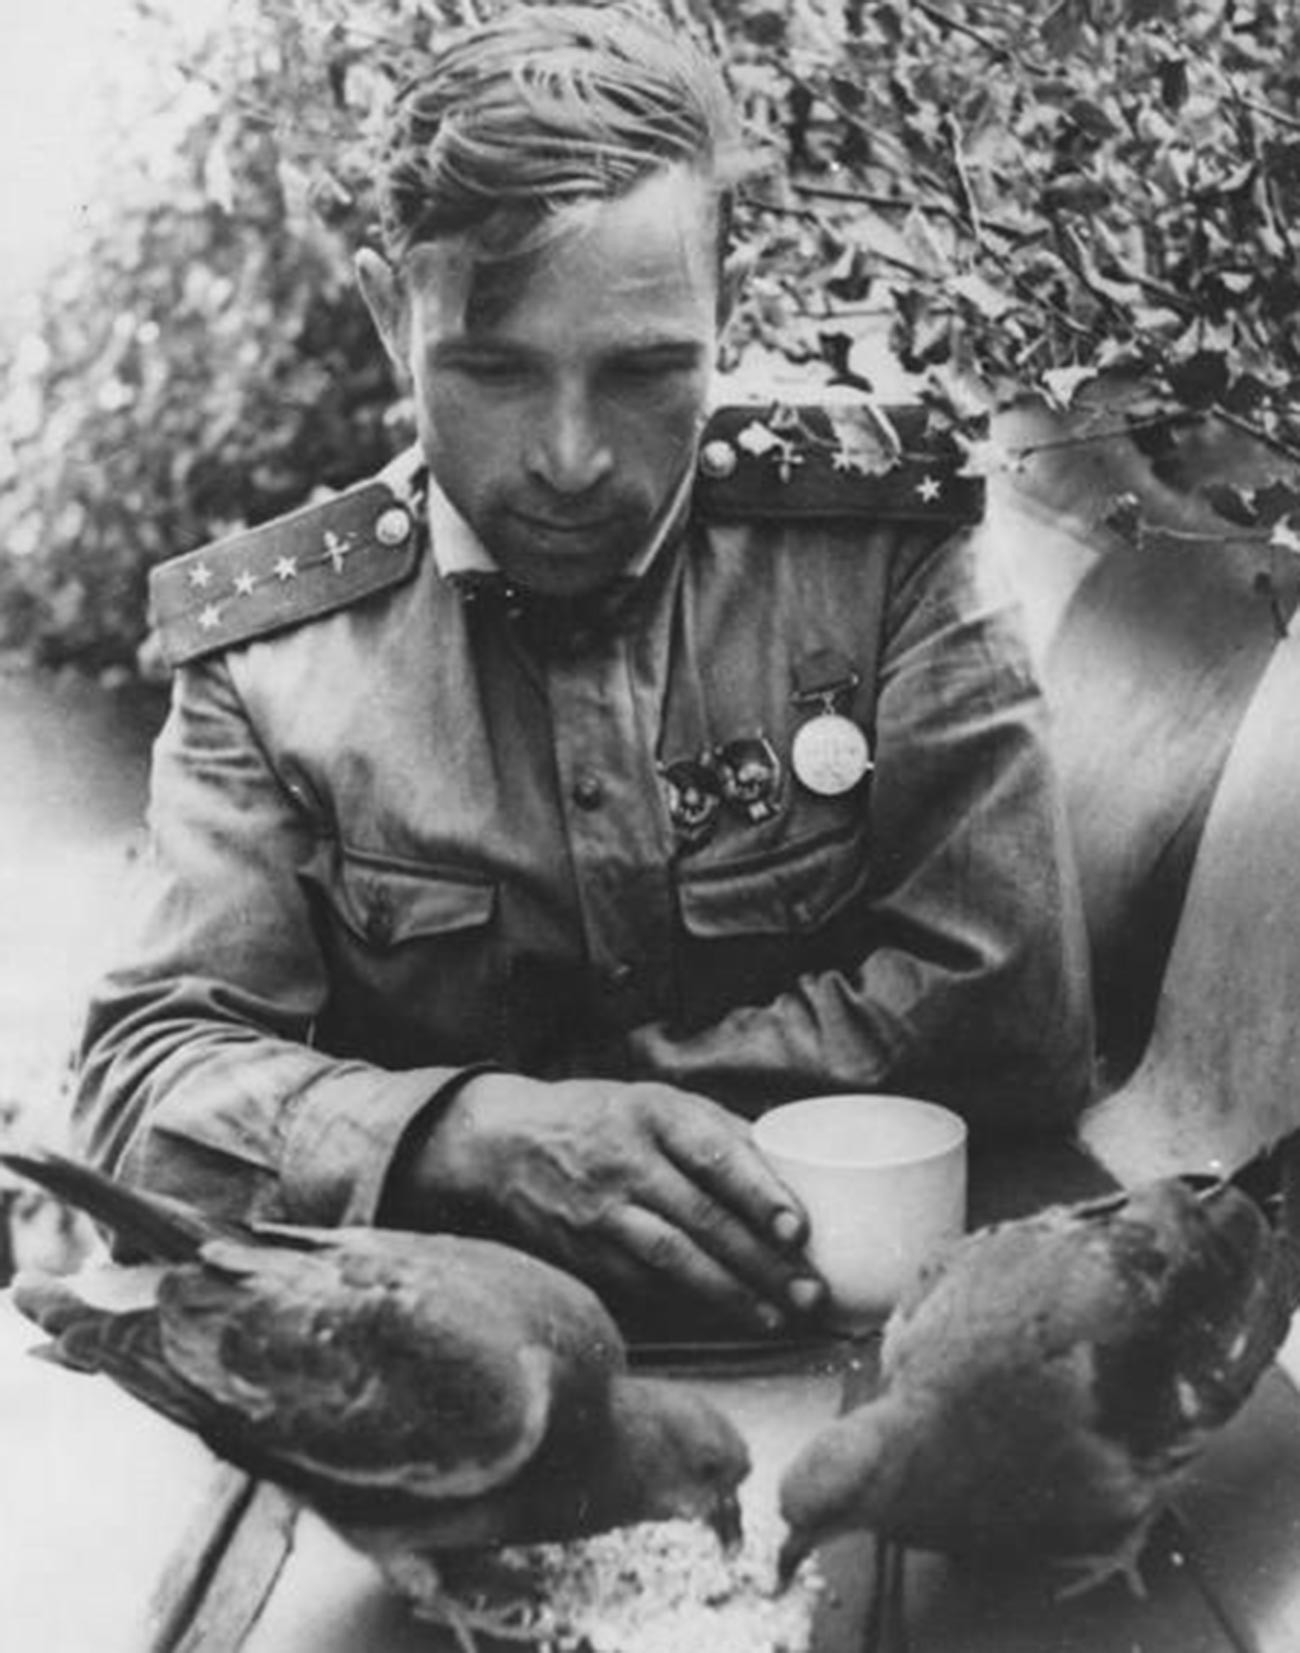 第二次世界大戦で赤軍の勝利に貢献した鳩たち ロシア ビヨンド